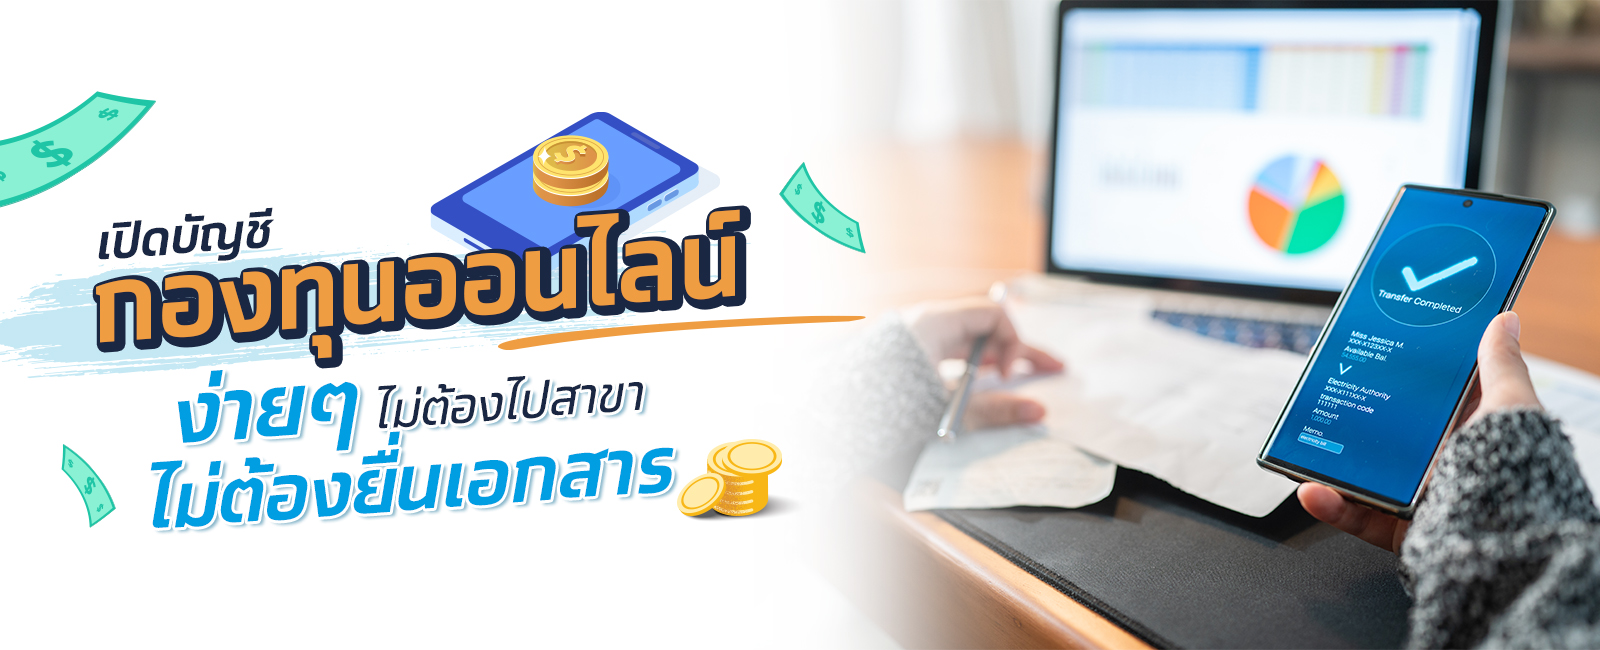 เปิดบัญชีกองทุนออนไลน์ง่าย ๆ ผ่าน Krungthai Next